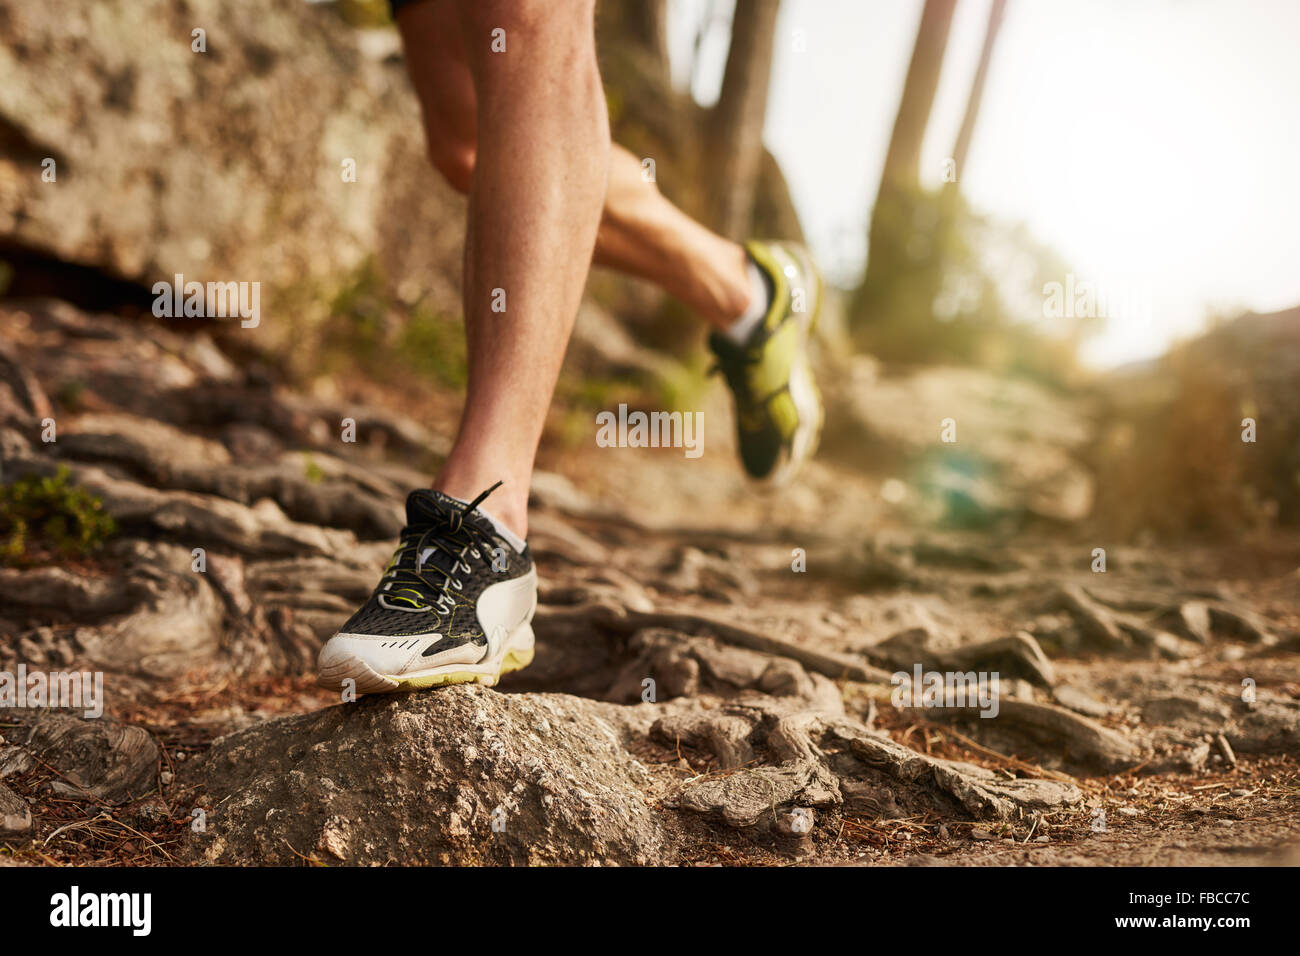 Close-up of trail chaussure de course sur des terrains rocheux. Les jambes du coureur masculin travaillant sur terrain extrême à l'extérieur. Banque D'Images